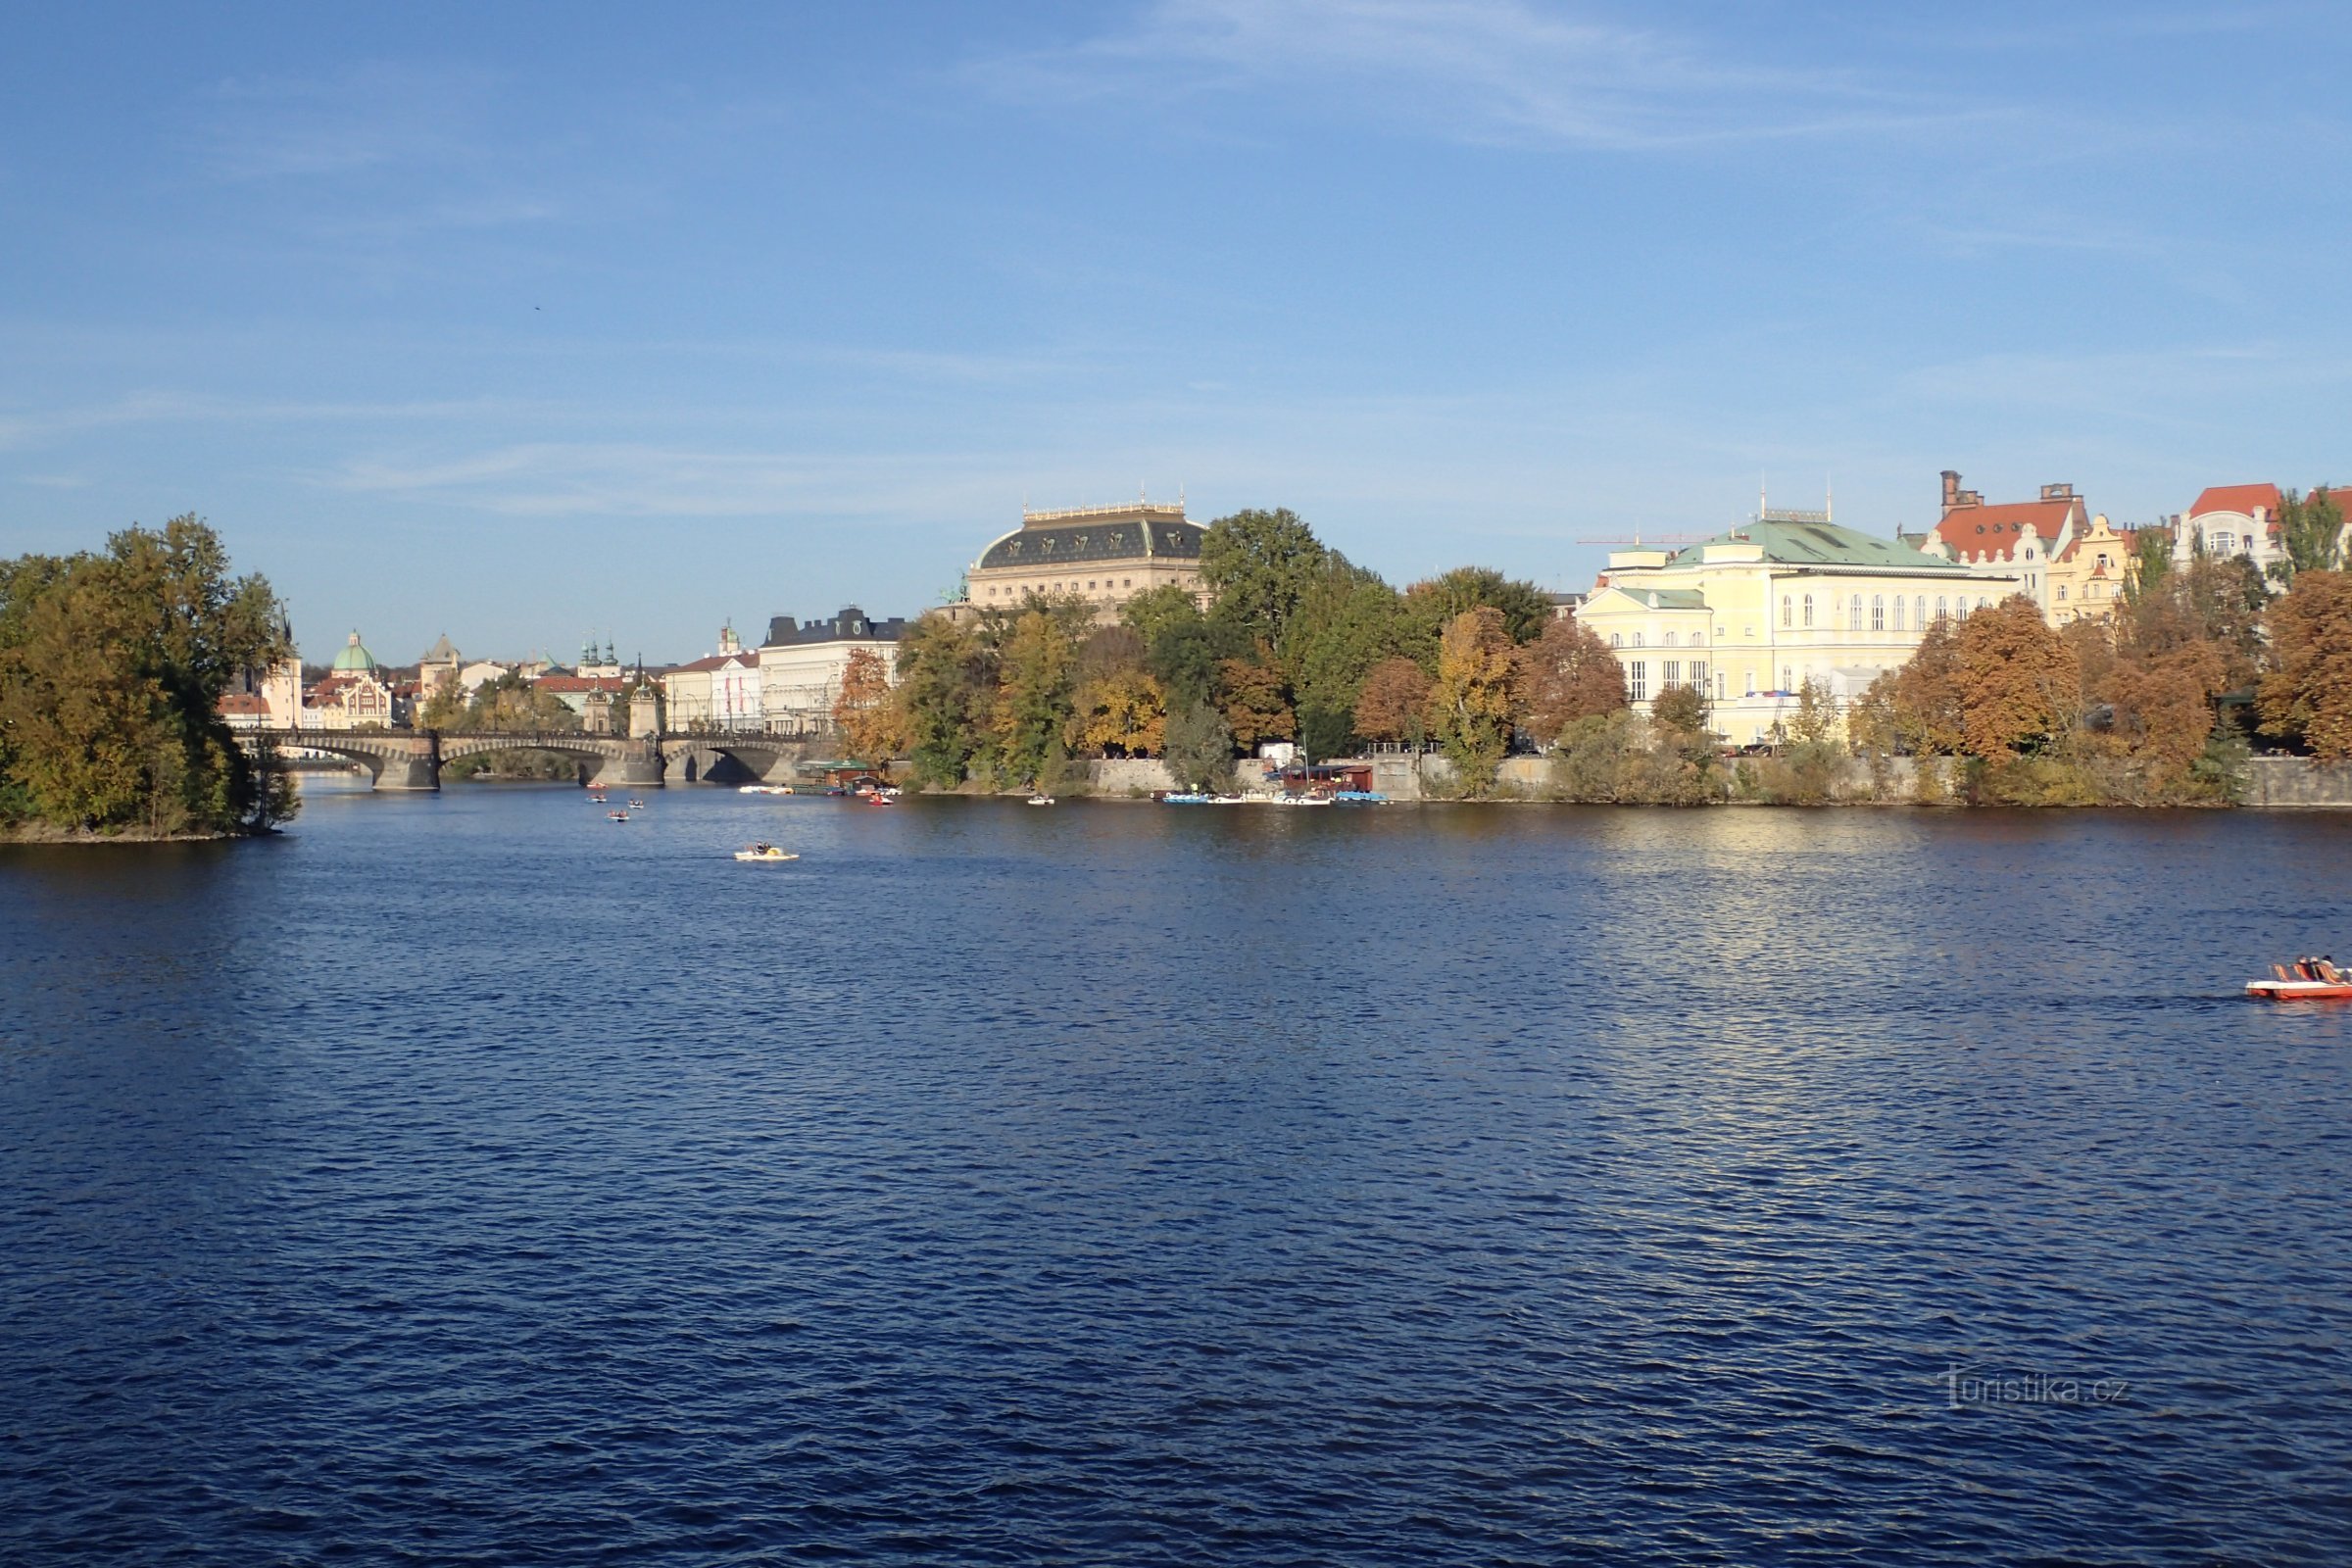 Udsigt over Nationalteatret på den anden side af Vltava-floden.